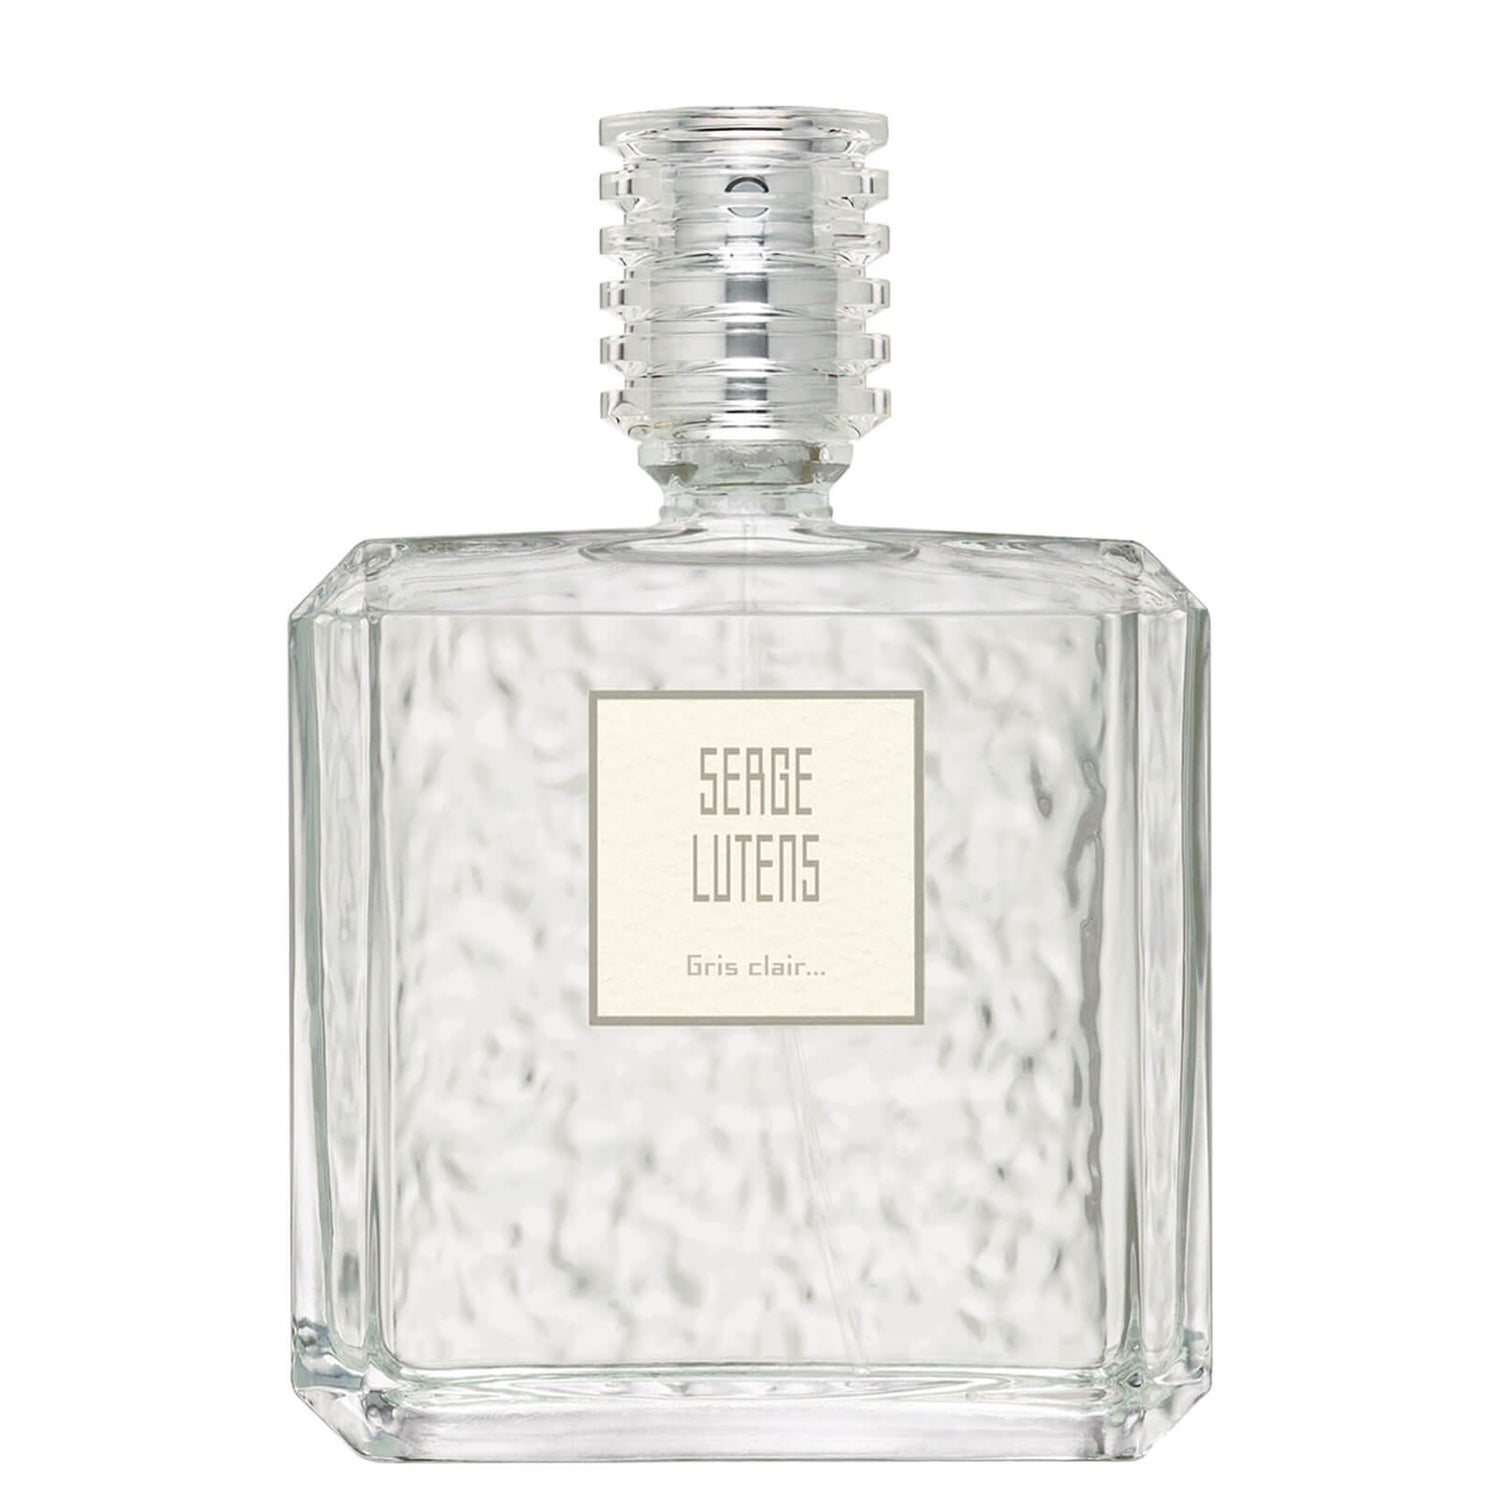 Serge Lutens Gris Clair… Eau de Parfum 100ml